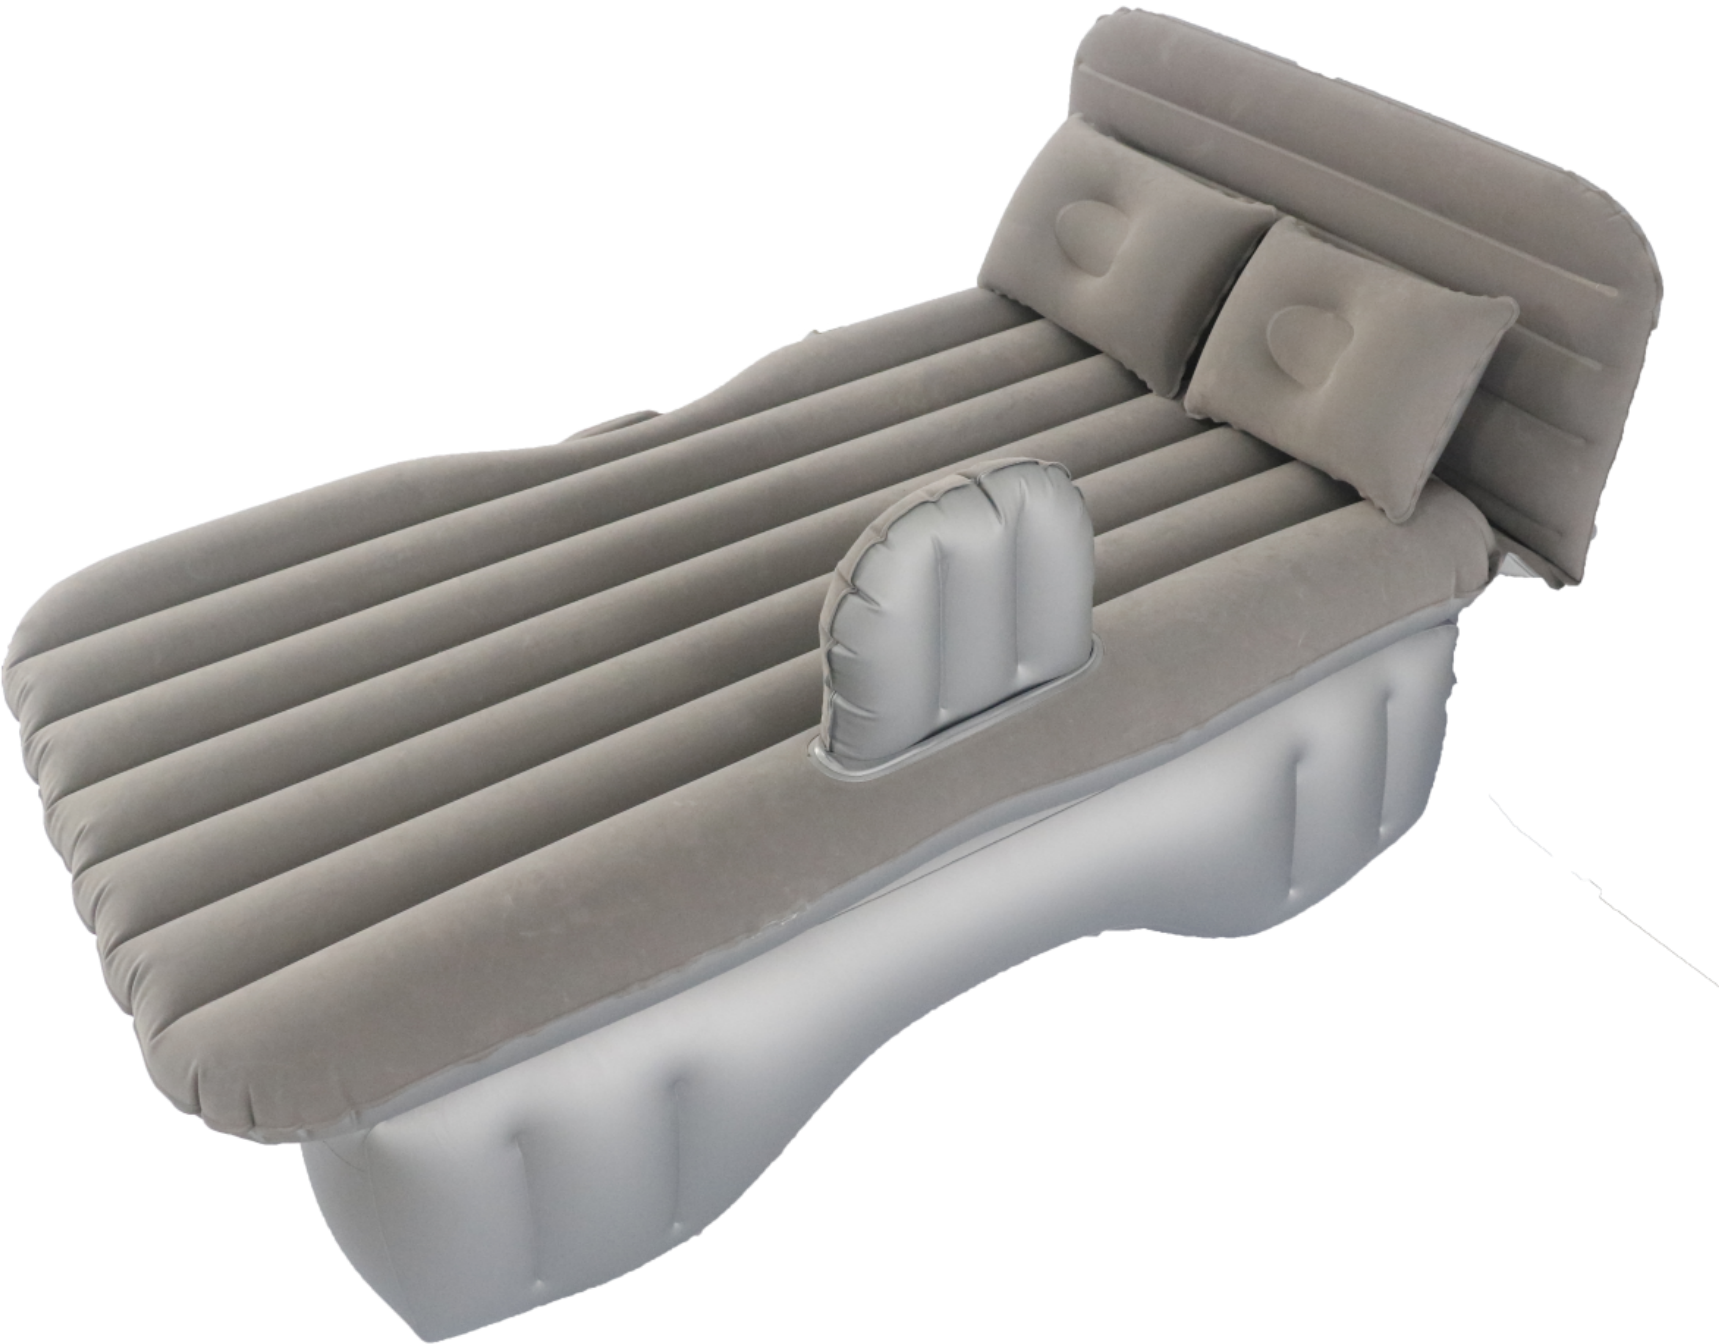 محمولة سرير الهواء مرتبة مضخة التضخم في الهواء الطلق سرير الهواء